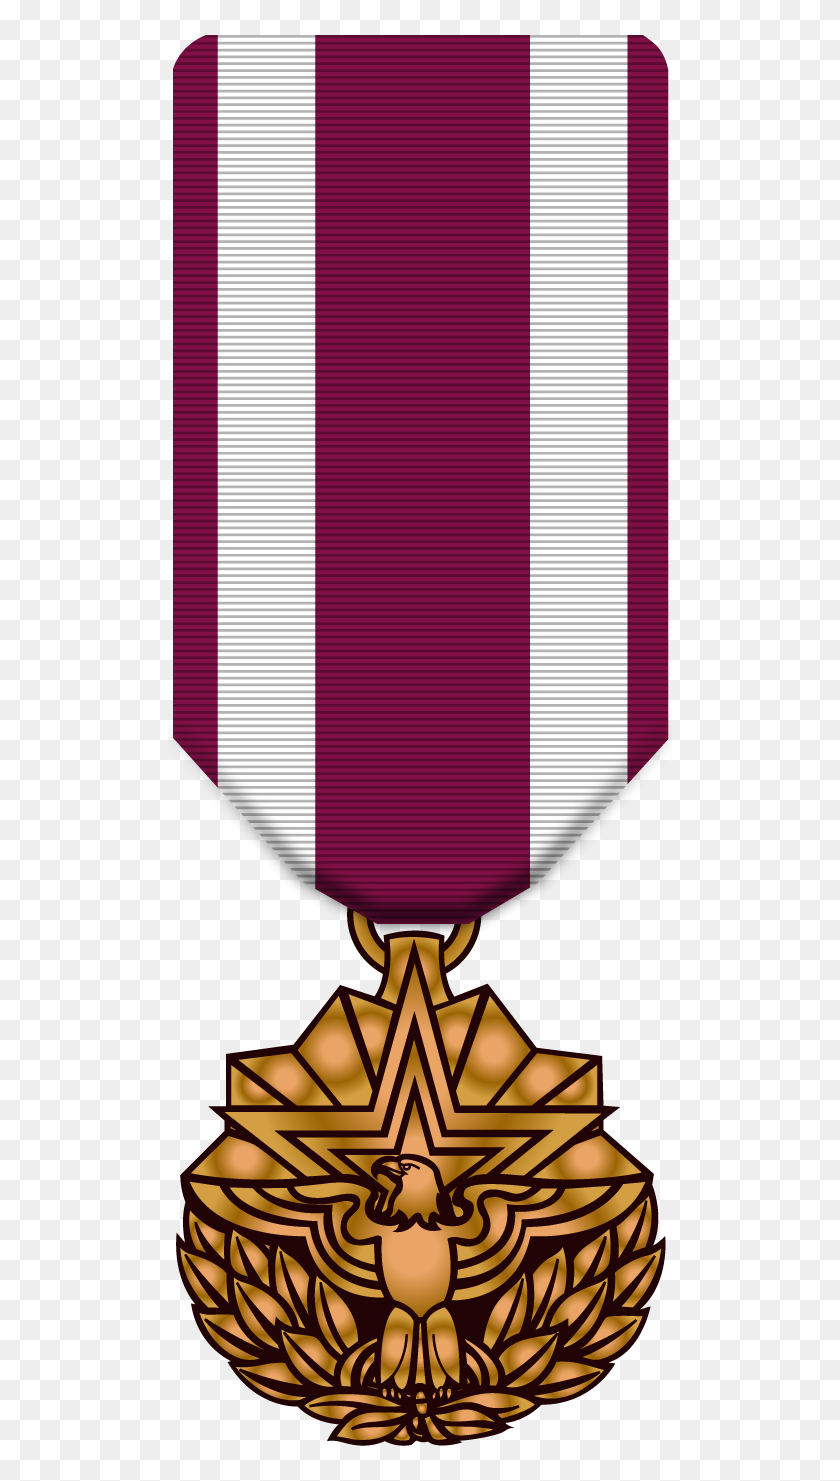 504x1421 Медали Корпуса Морской Пехоты, Медали Военно-Морского Флота, Армейские Медали, Медали Ввс - Медаль `` Пурпурное Сердце '' Клипарт